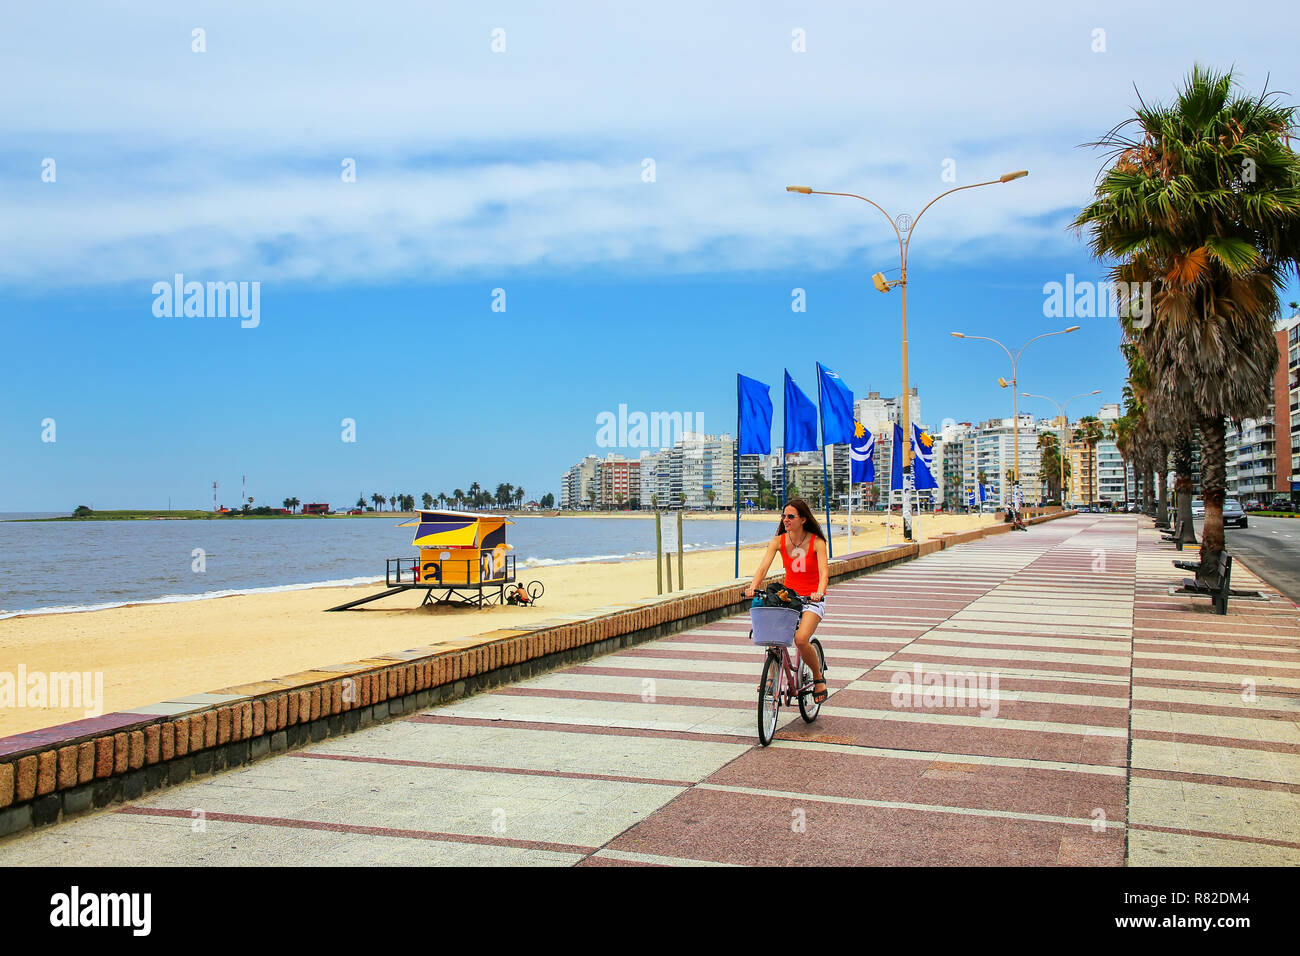 Femme cycliste sur le boulevard le long de la plage de Pocitos à Montevideo, Uruguay. Montevideo est la capitale et la plus grande ville de l'Uruguay Banque D'Images